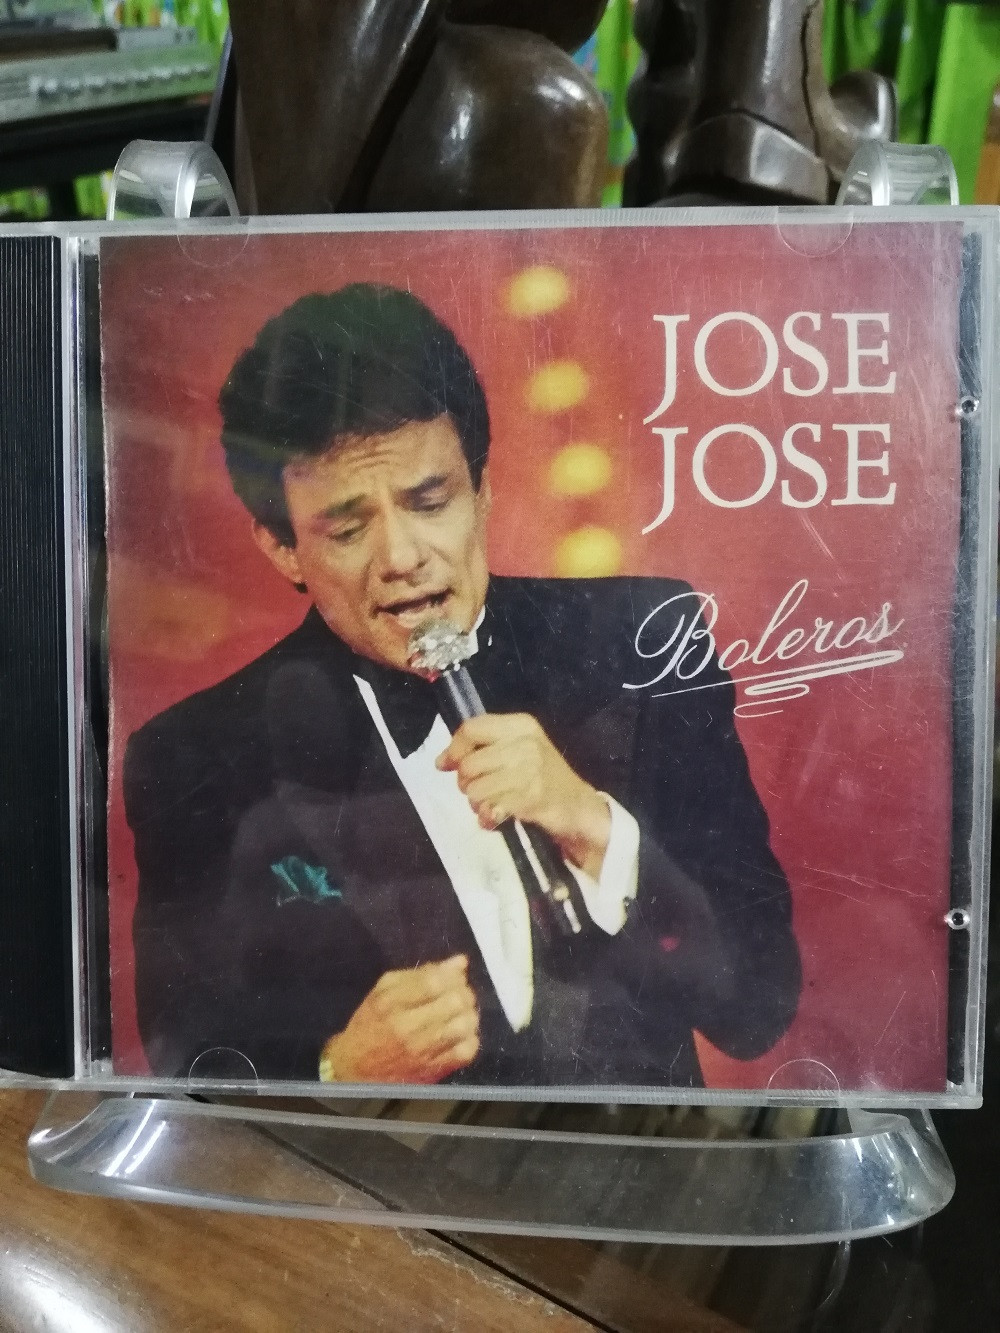 Imagen CD JOSÉ JOSÉ - BOLEROS